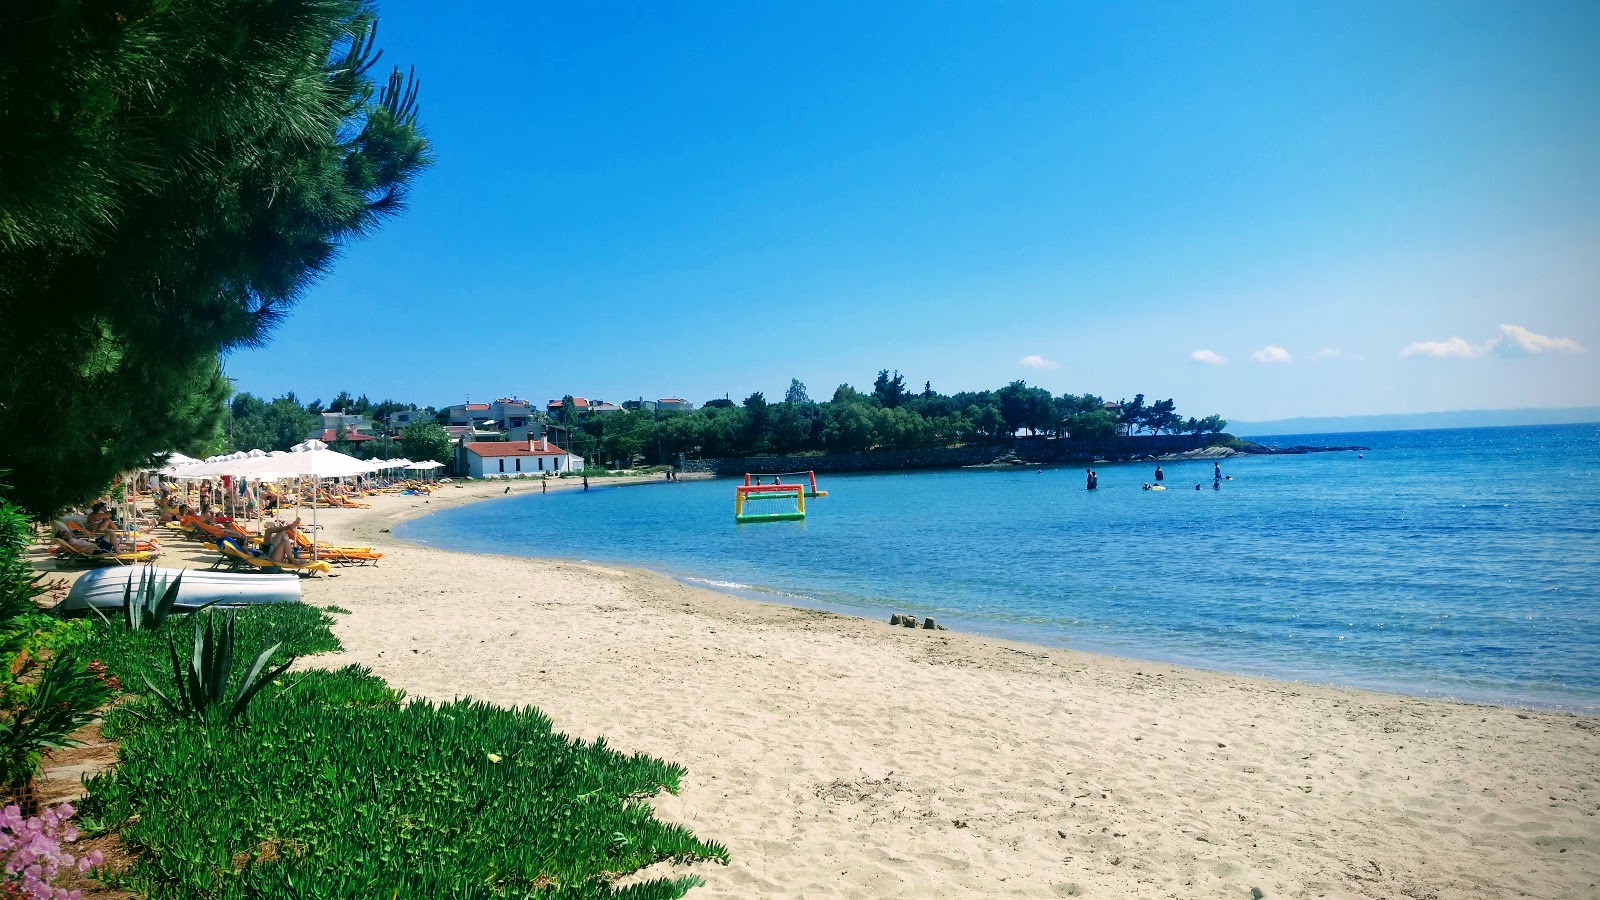 Foto de Elia beach - lugar popular entre los conocedores del relax